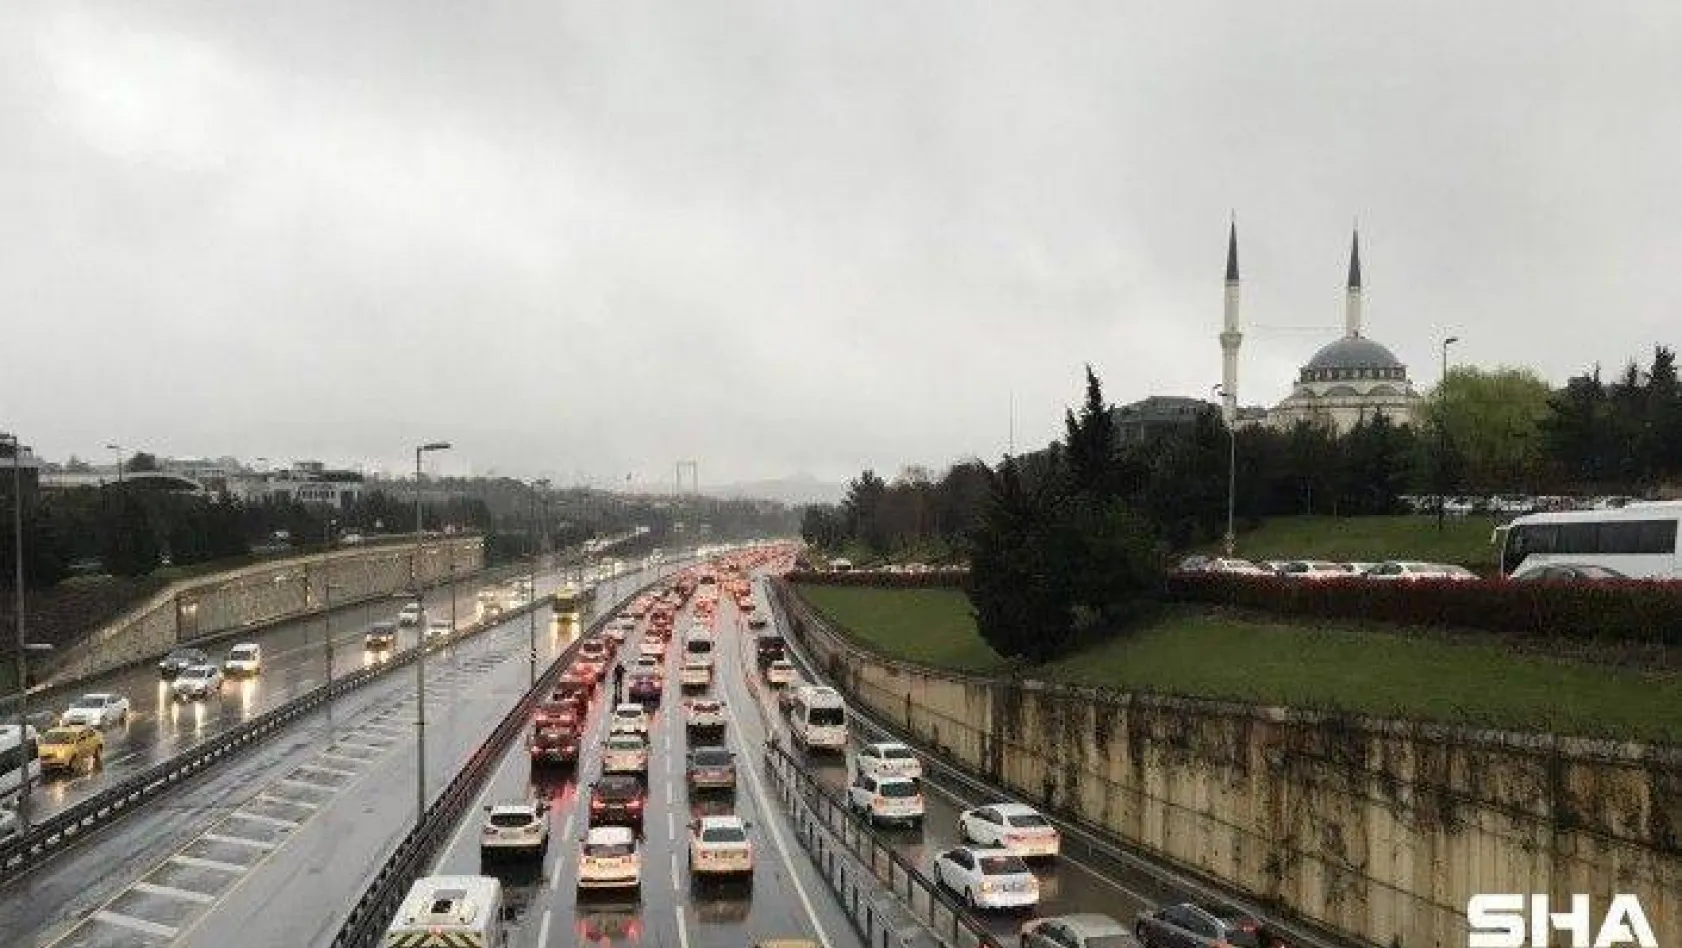 56 saatlik kısıtlama sonrası İstanbul'da trafik yoğunluğu